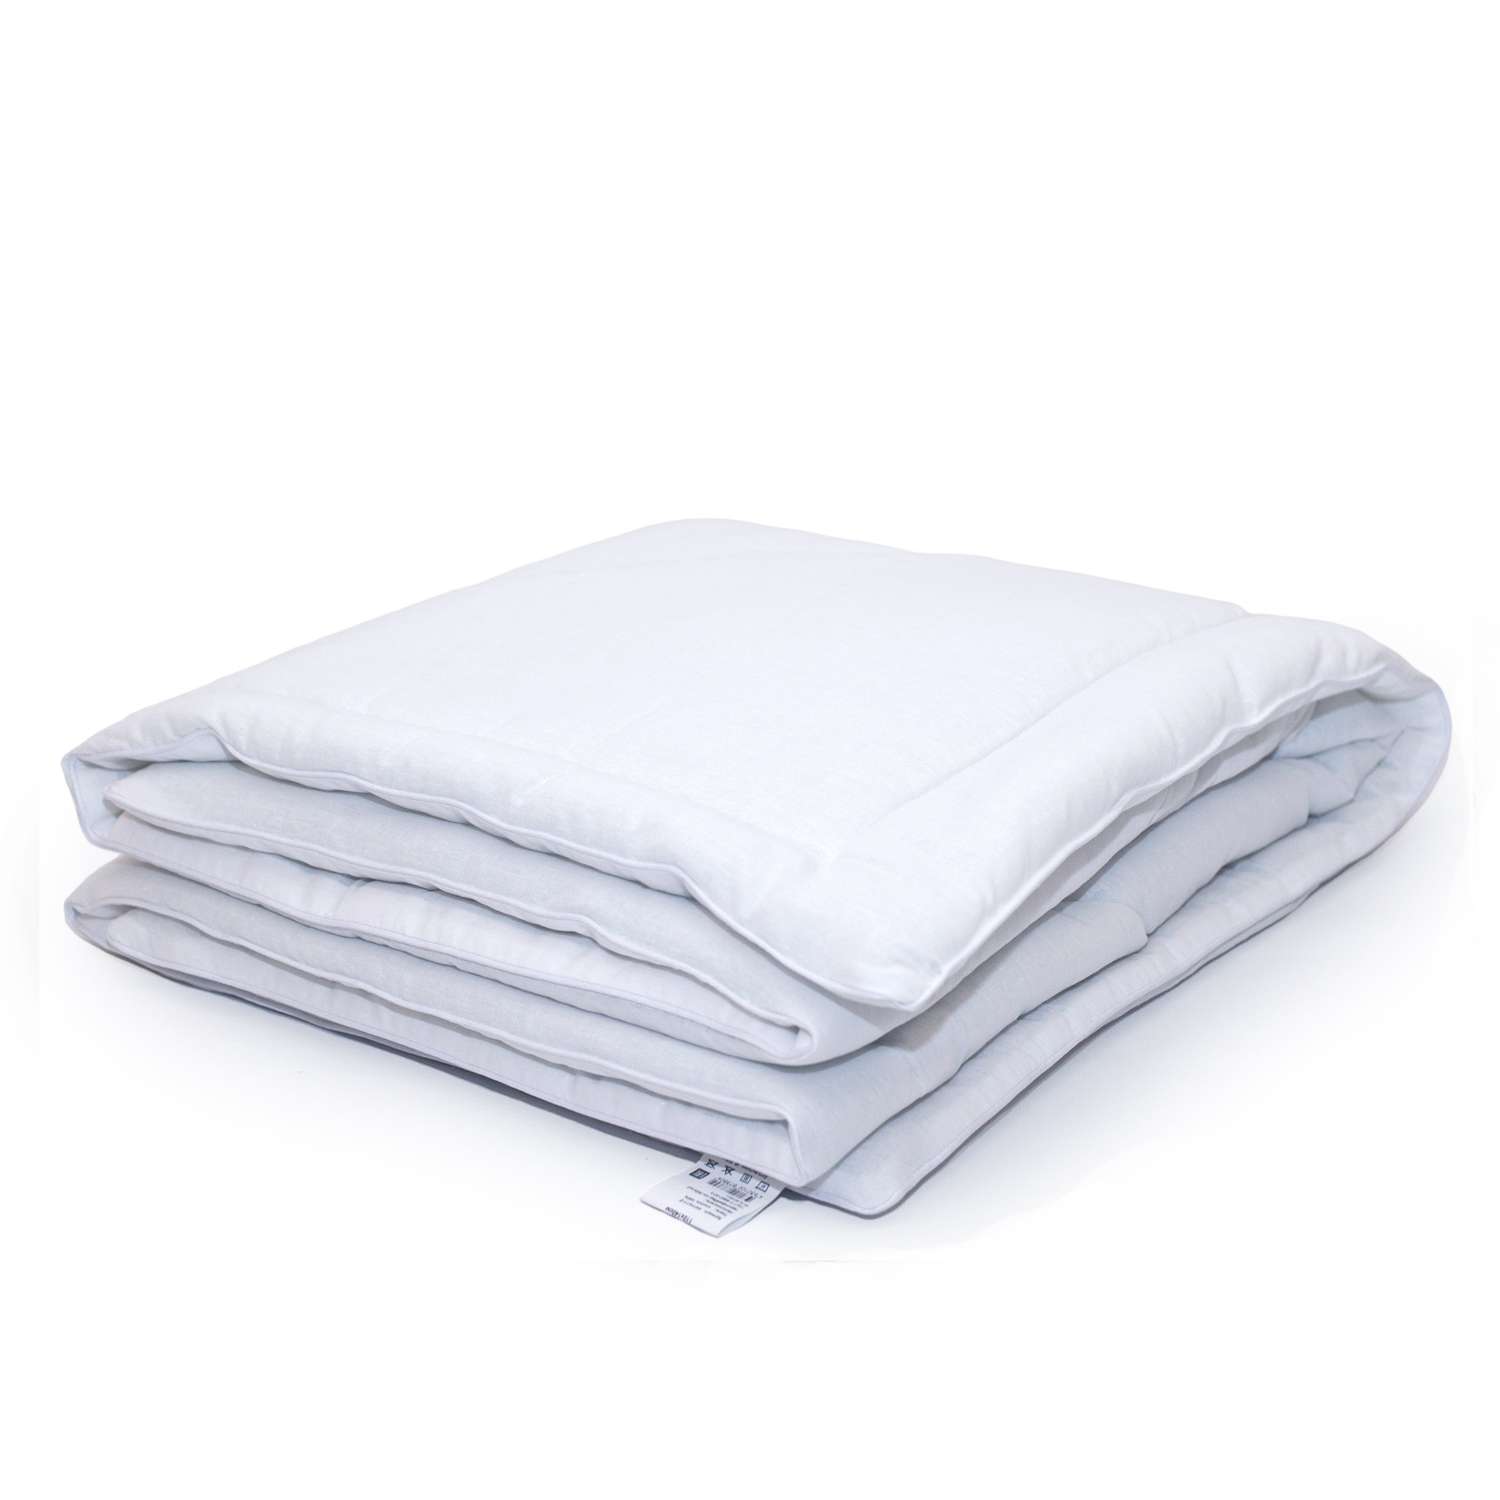 Одеяло BelPol цвет белый наполнитель микроволокно озонированное чехол бязь теплое 110х140 см - фото 2